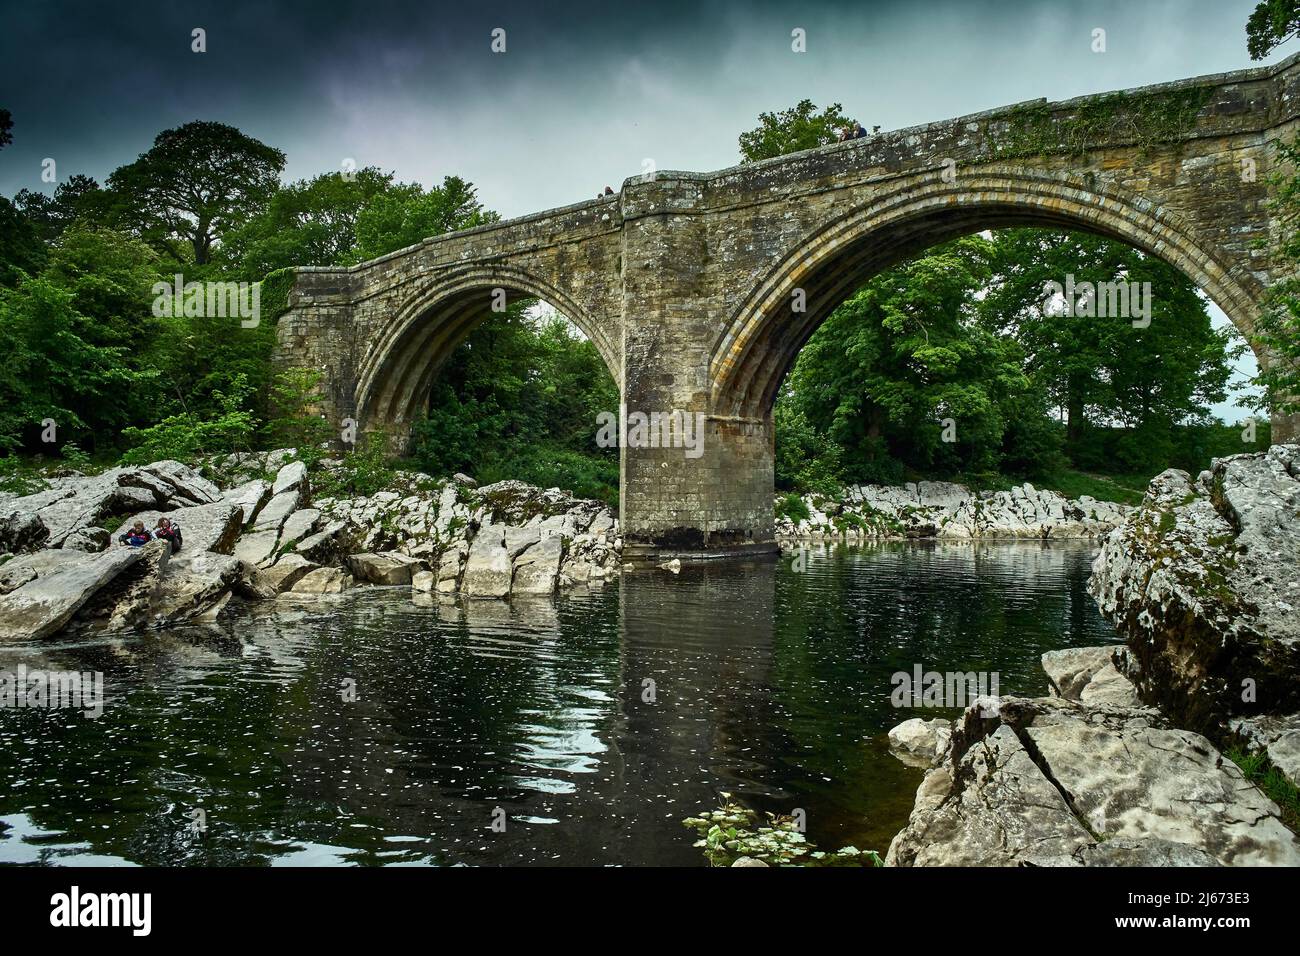 Devils Bridge, Kirkby Lonsdale che risale al 12th o 13th secolo è stato un importante punto di attraversamento del fiume Lune fino agli inizi del 20th secolo Foto Stock